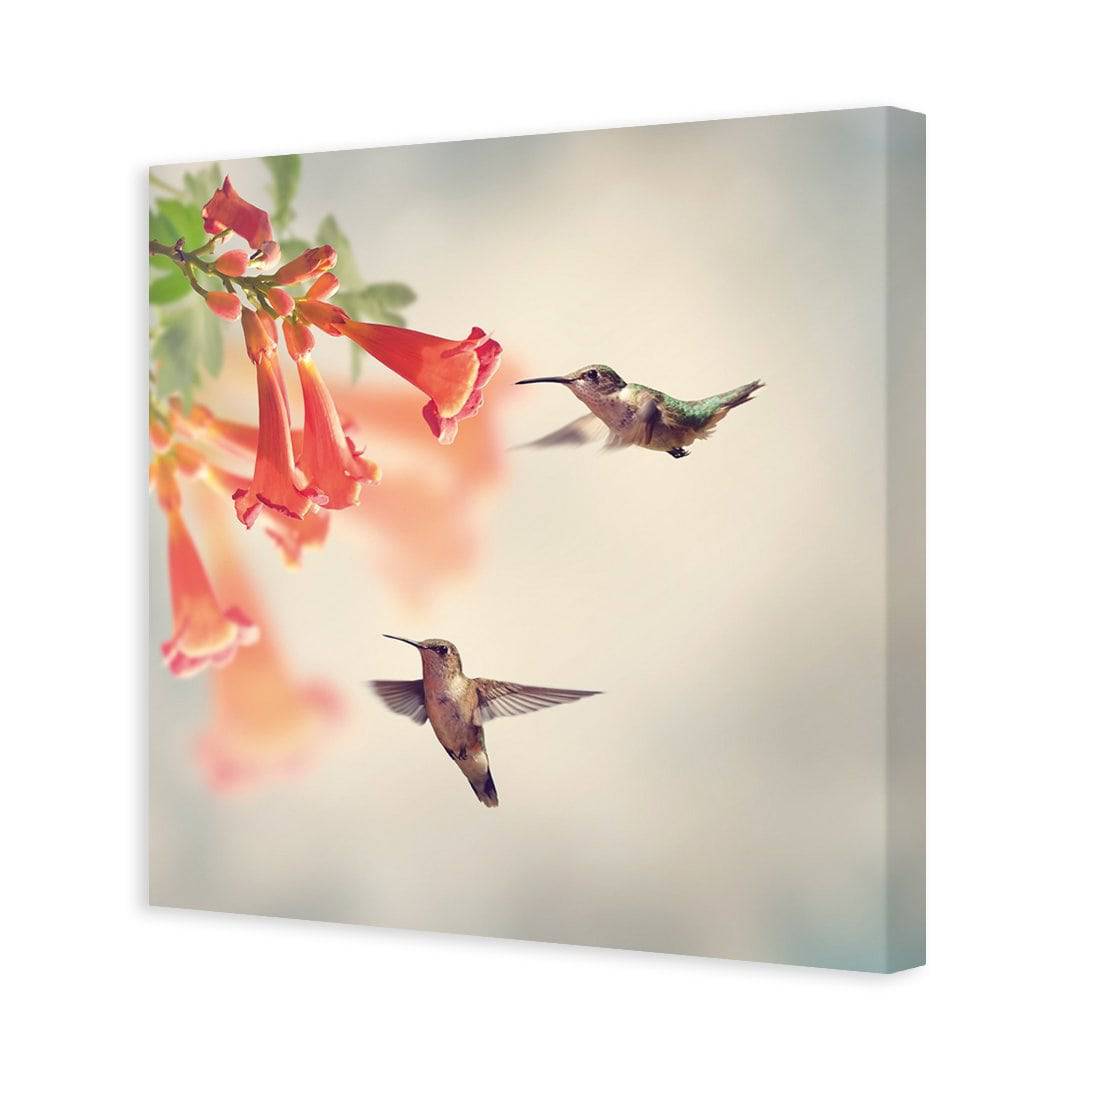 Hummingbird Hover Canvas Art-Canvas-Wall Art Designs-30x30cm-Canvas - No Frame-Wall Art Designs